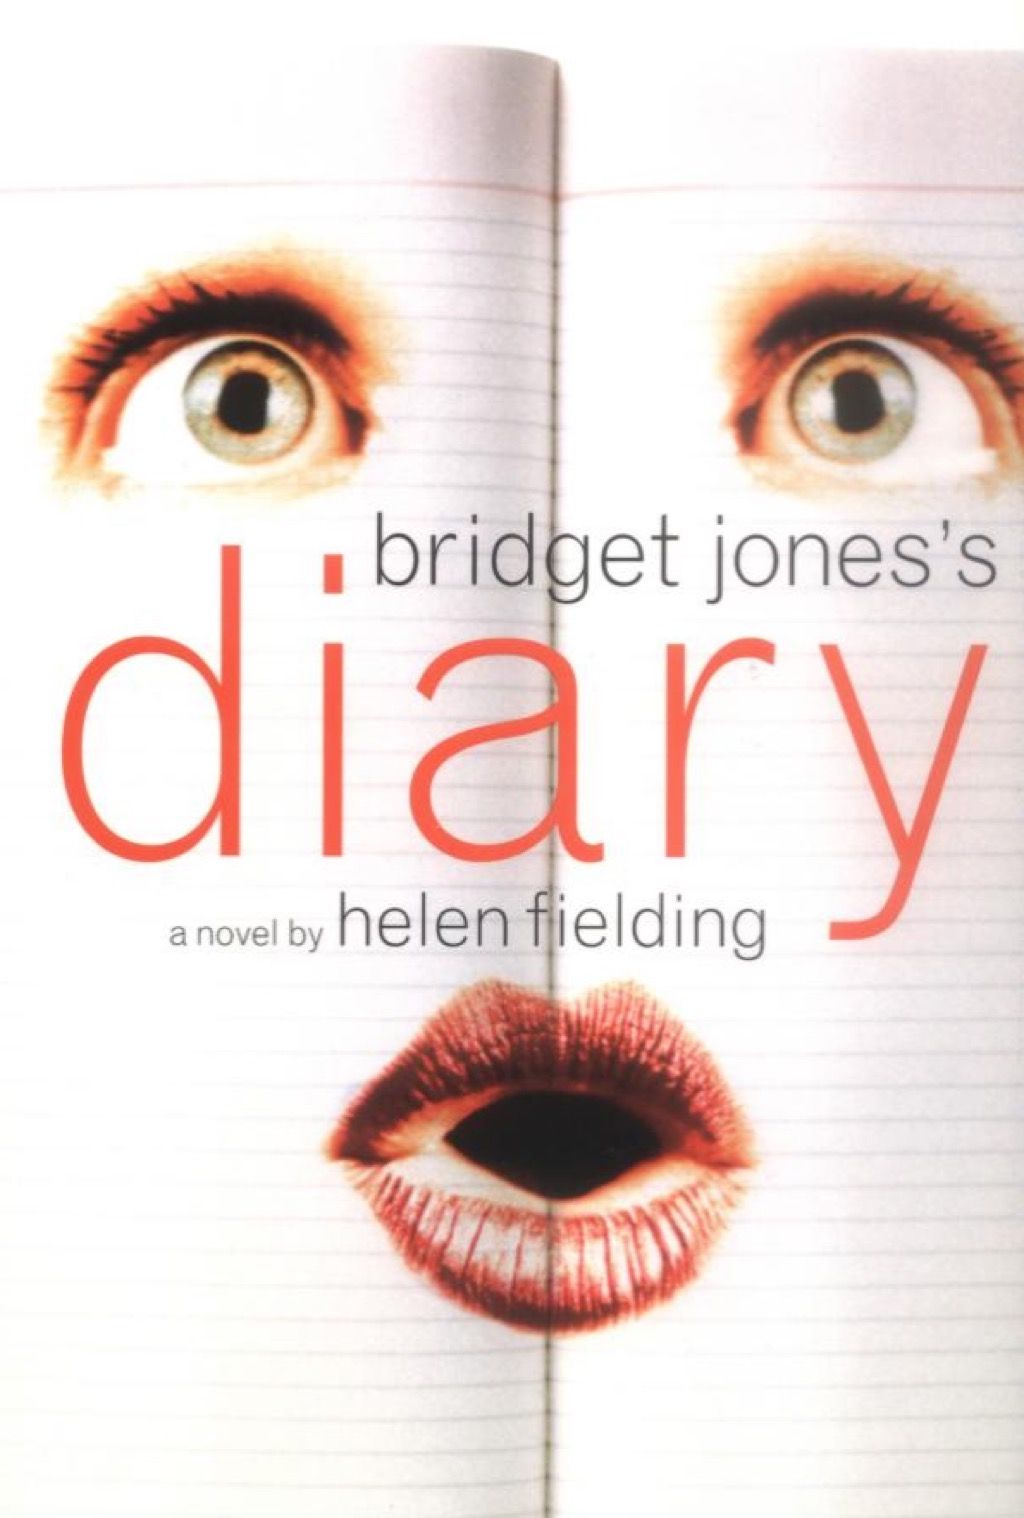 Dziennik Bridget Jones, książki, które każda kobieta po czterdziestce powinna przeczytać